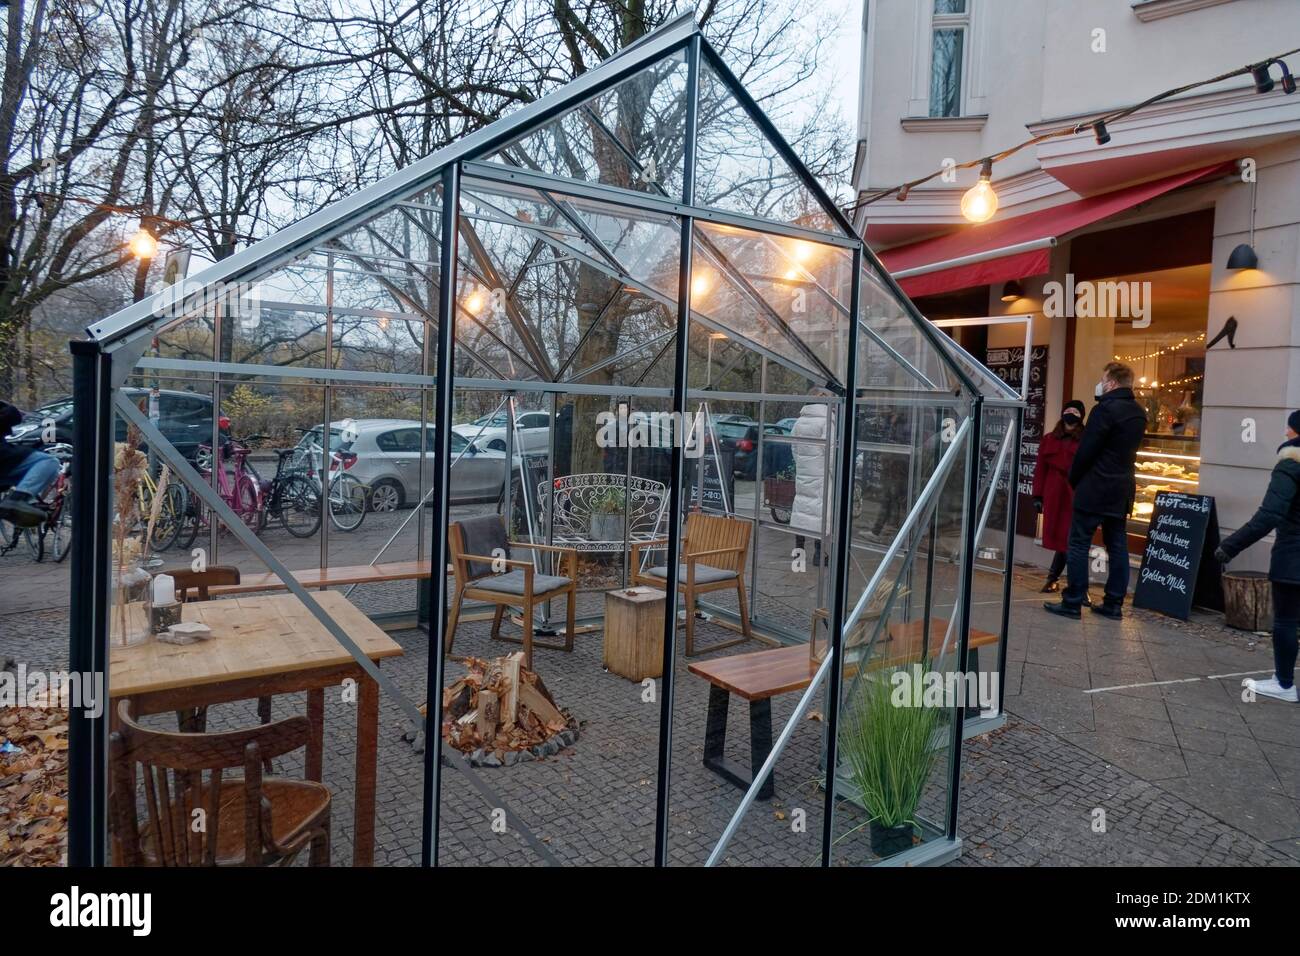 Gluehweinverkauf im Cafe Ahorn am Urbahnhafen in Kreuzberg waehrend des Corona-lockdowns am letzten Wochende vor dem harten Lockdown ab 16. Dezember m Foto de stock